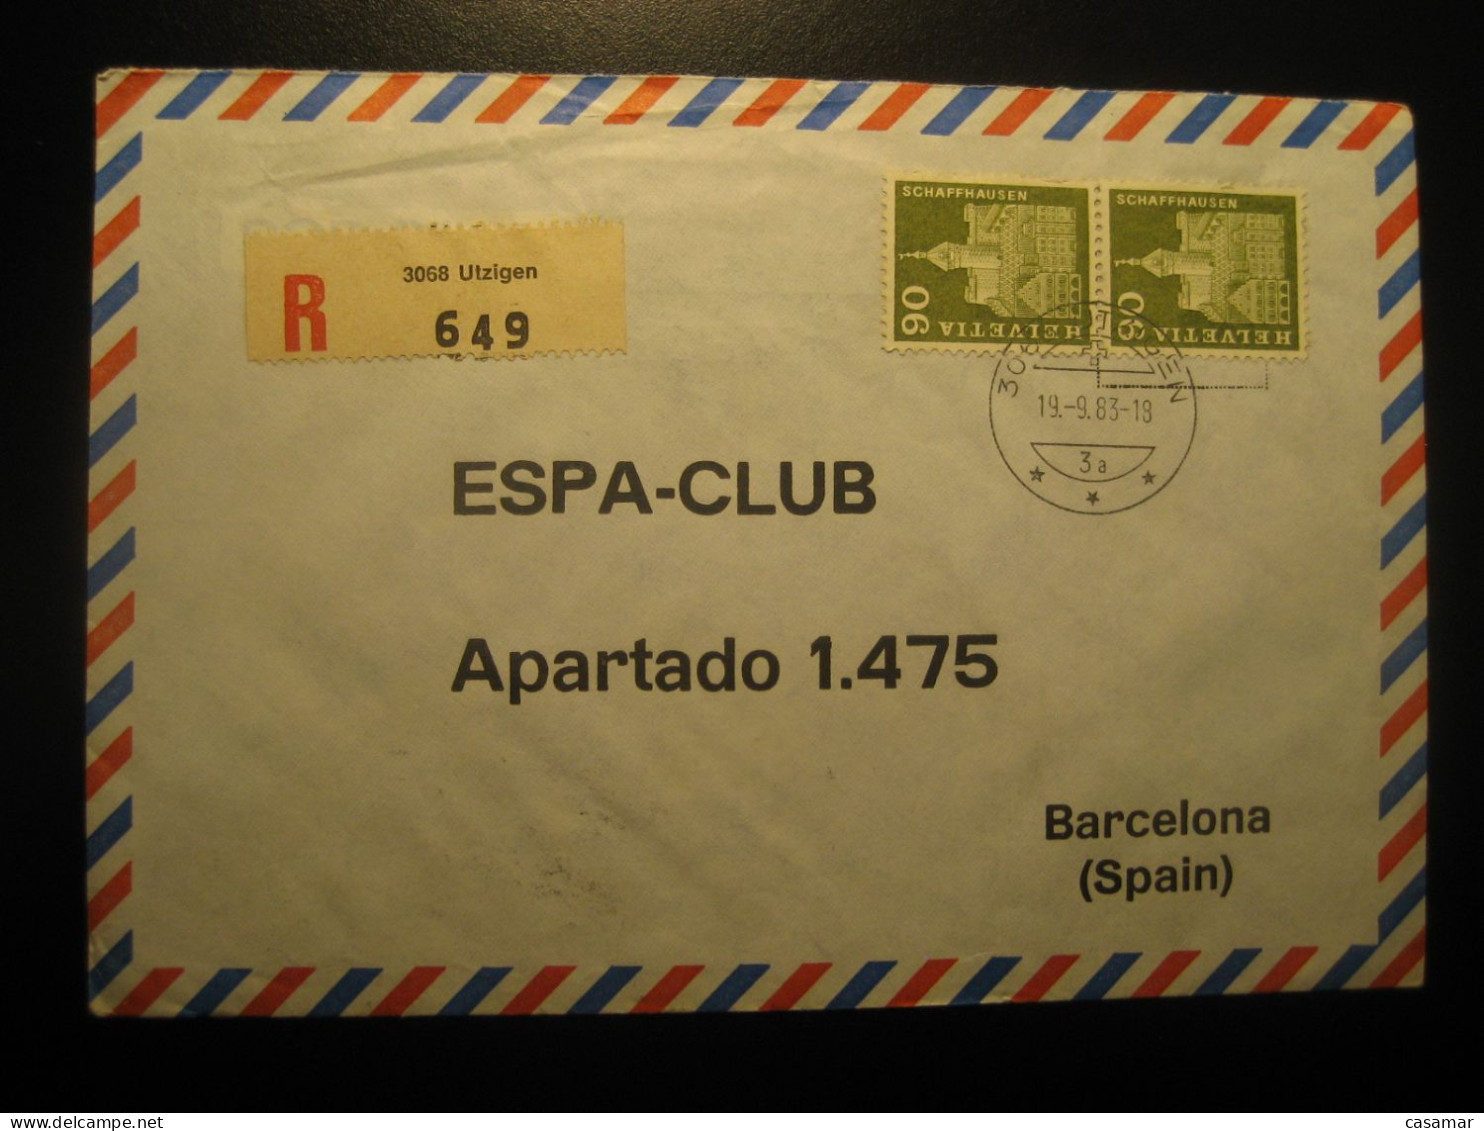 UTZIGEN 1983 Registered Air Mail Cancel Cover SWITZERLAND - Briefe U. Dokumente